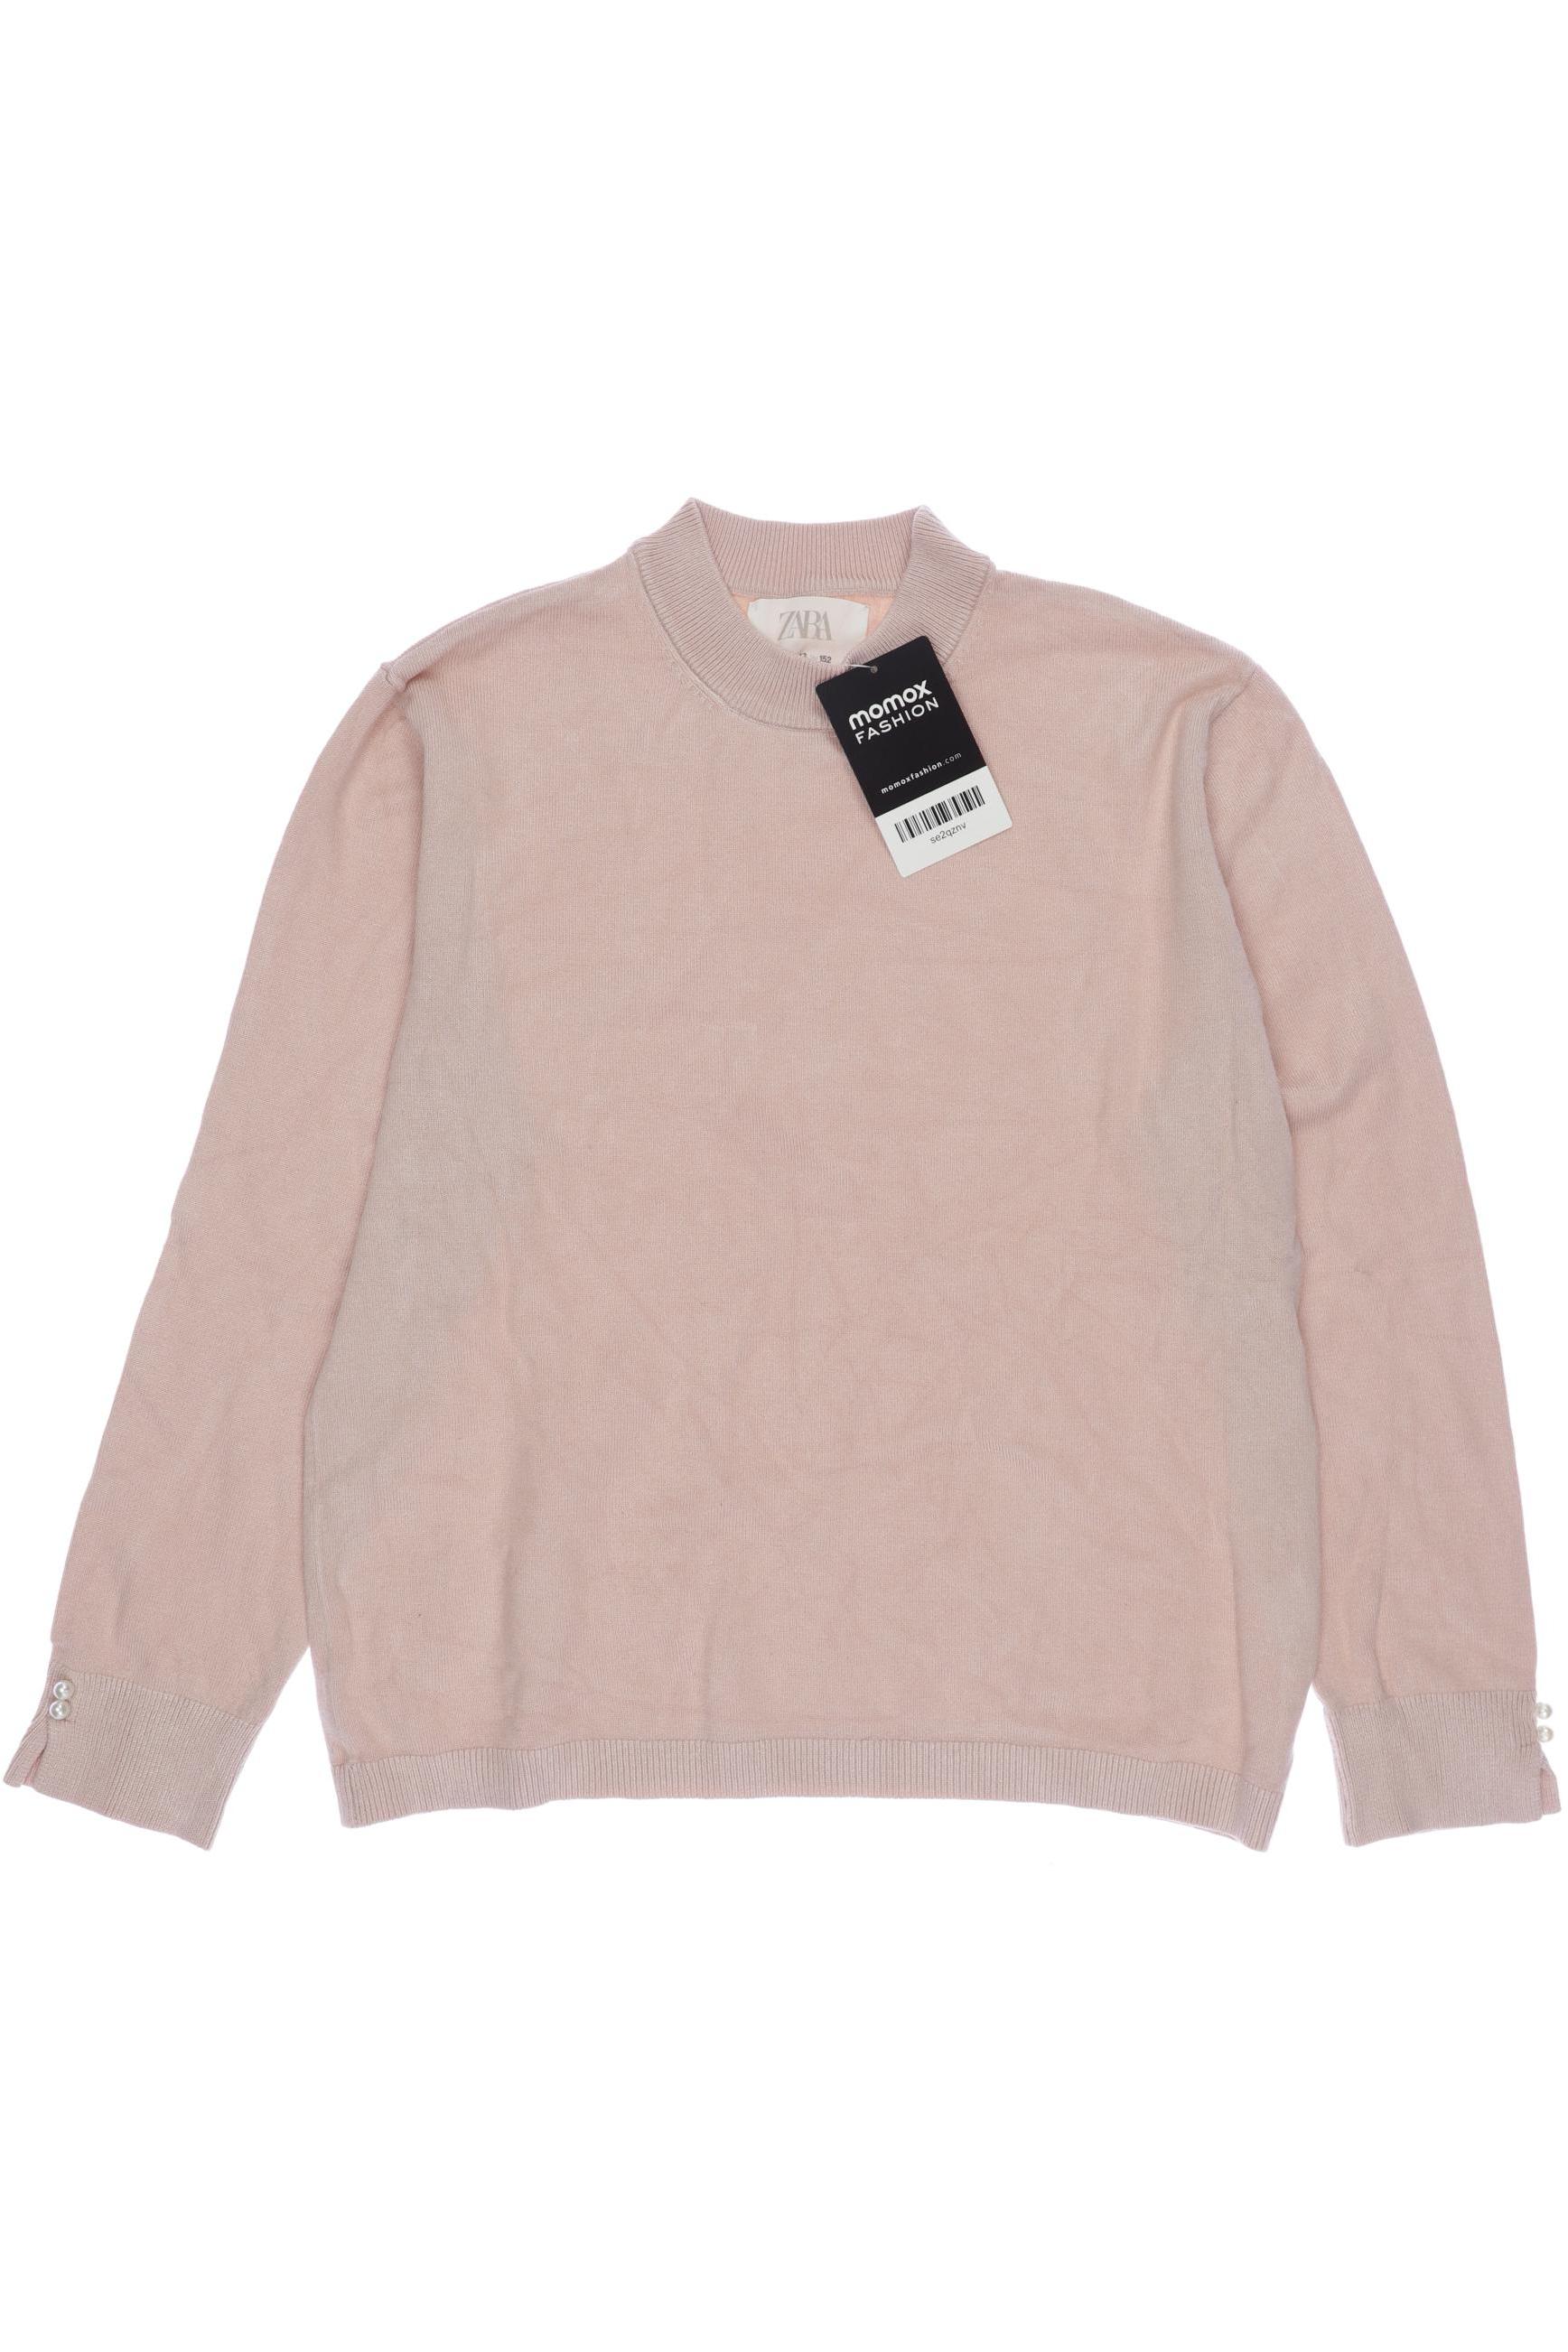 Zara Damen Pullover, pink, Gr. 152 von ZARA